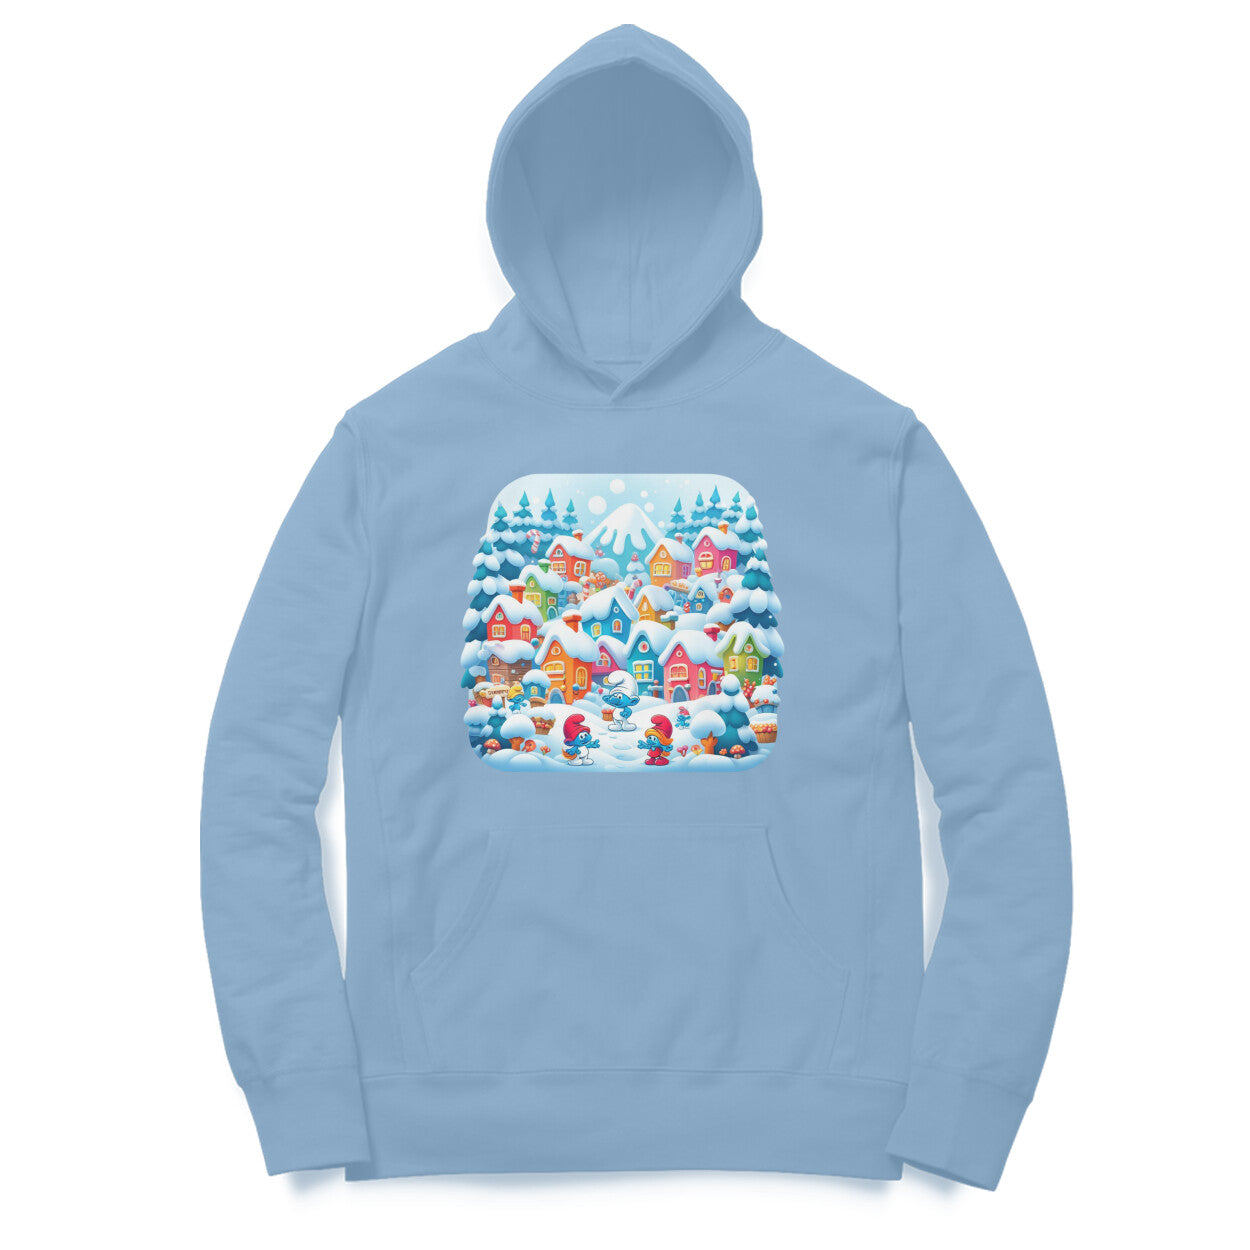 Winter Wonderland Men's Hooded Sweatshirt - Smurf Village Magic